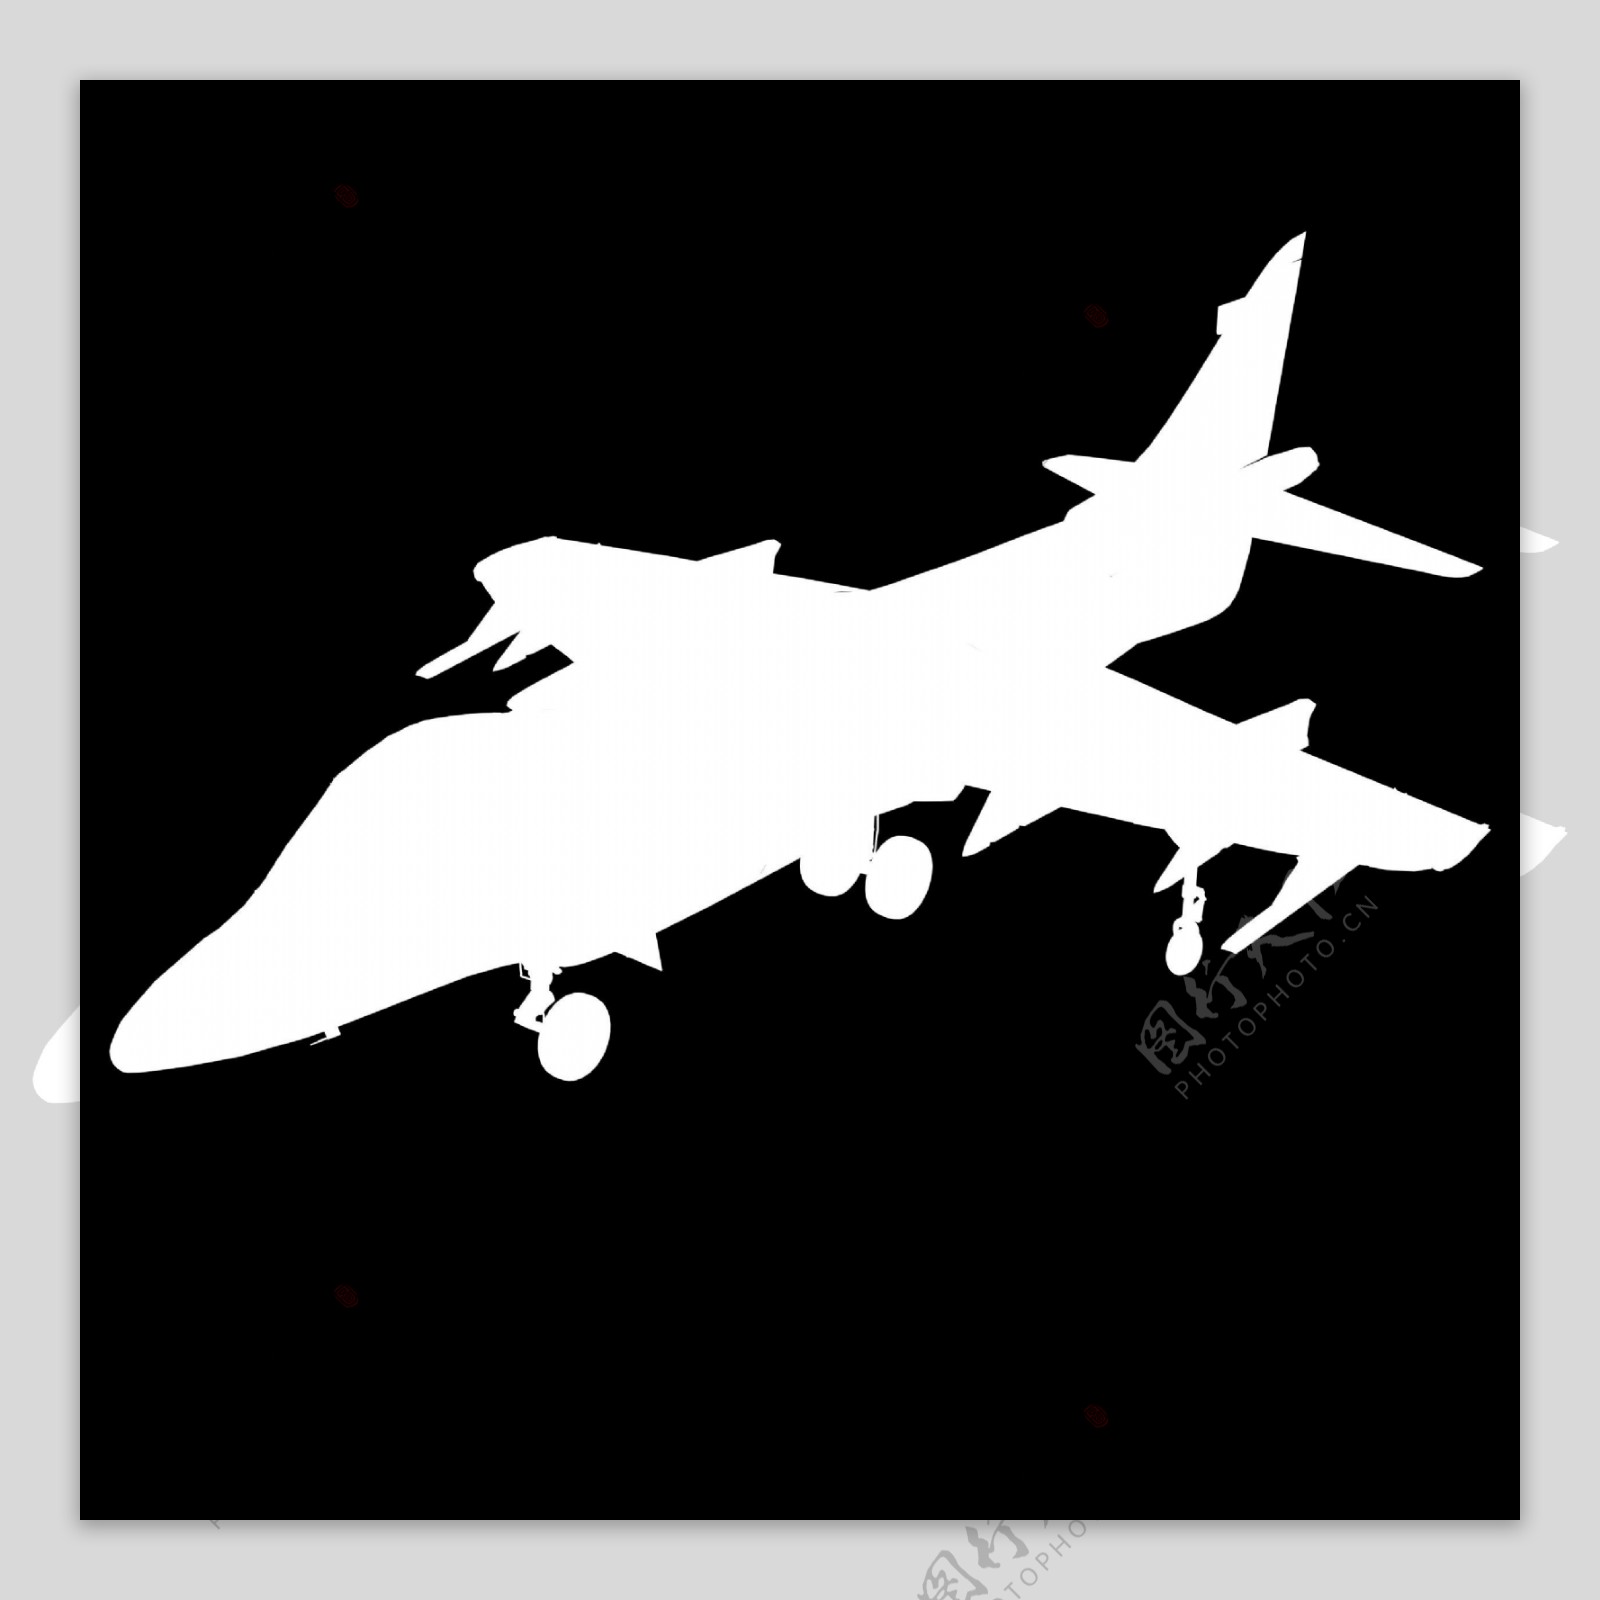 战斗机飞机3D模型素材22